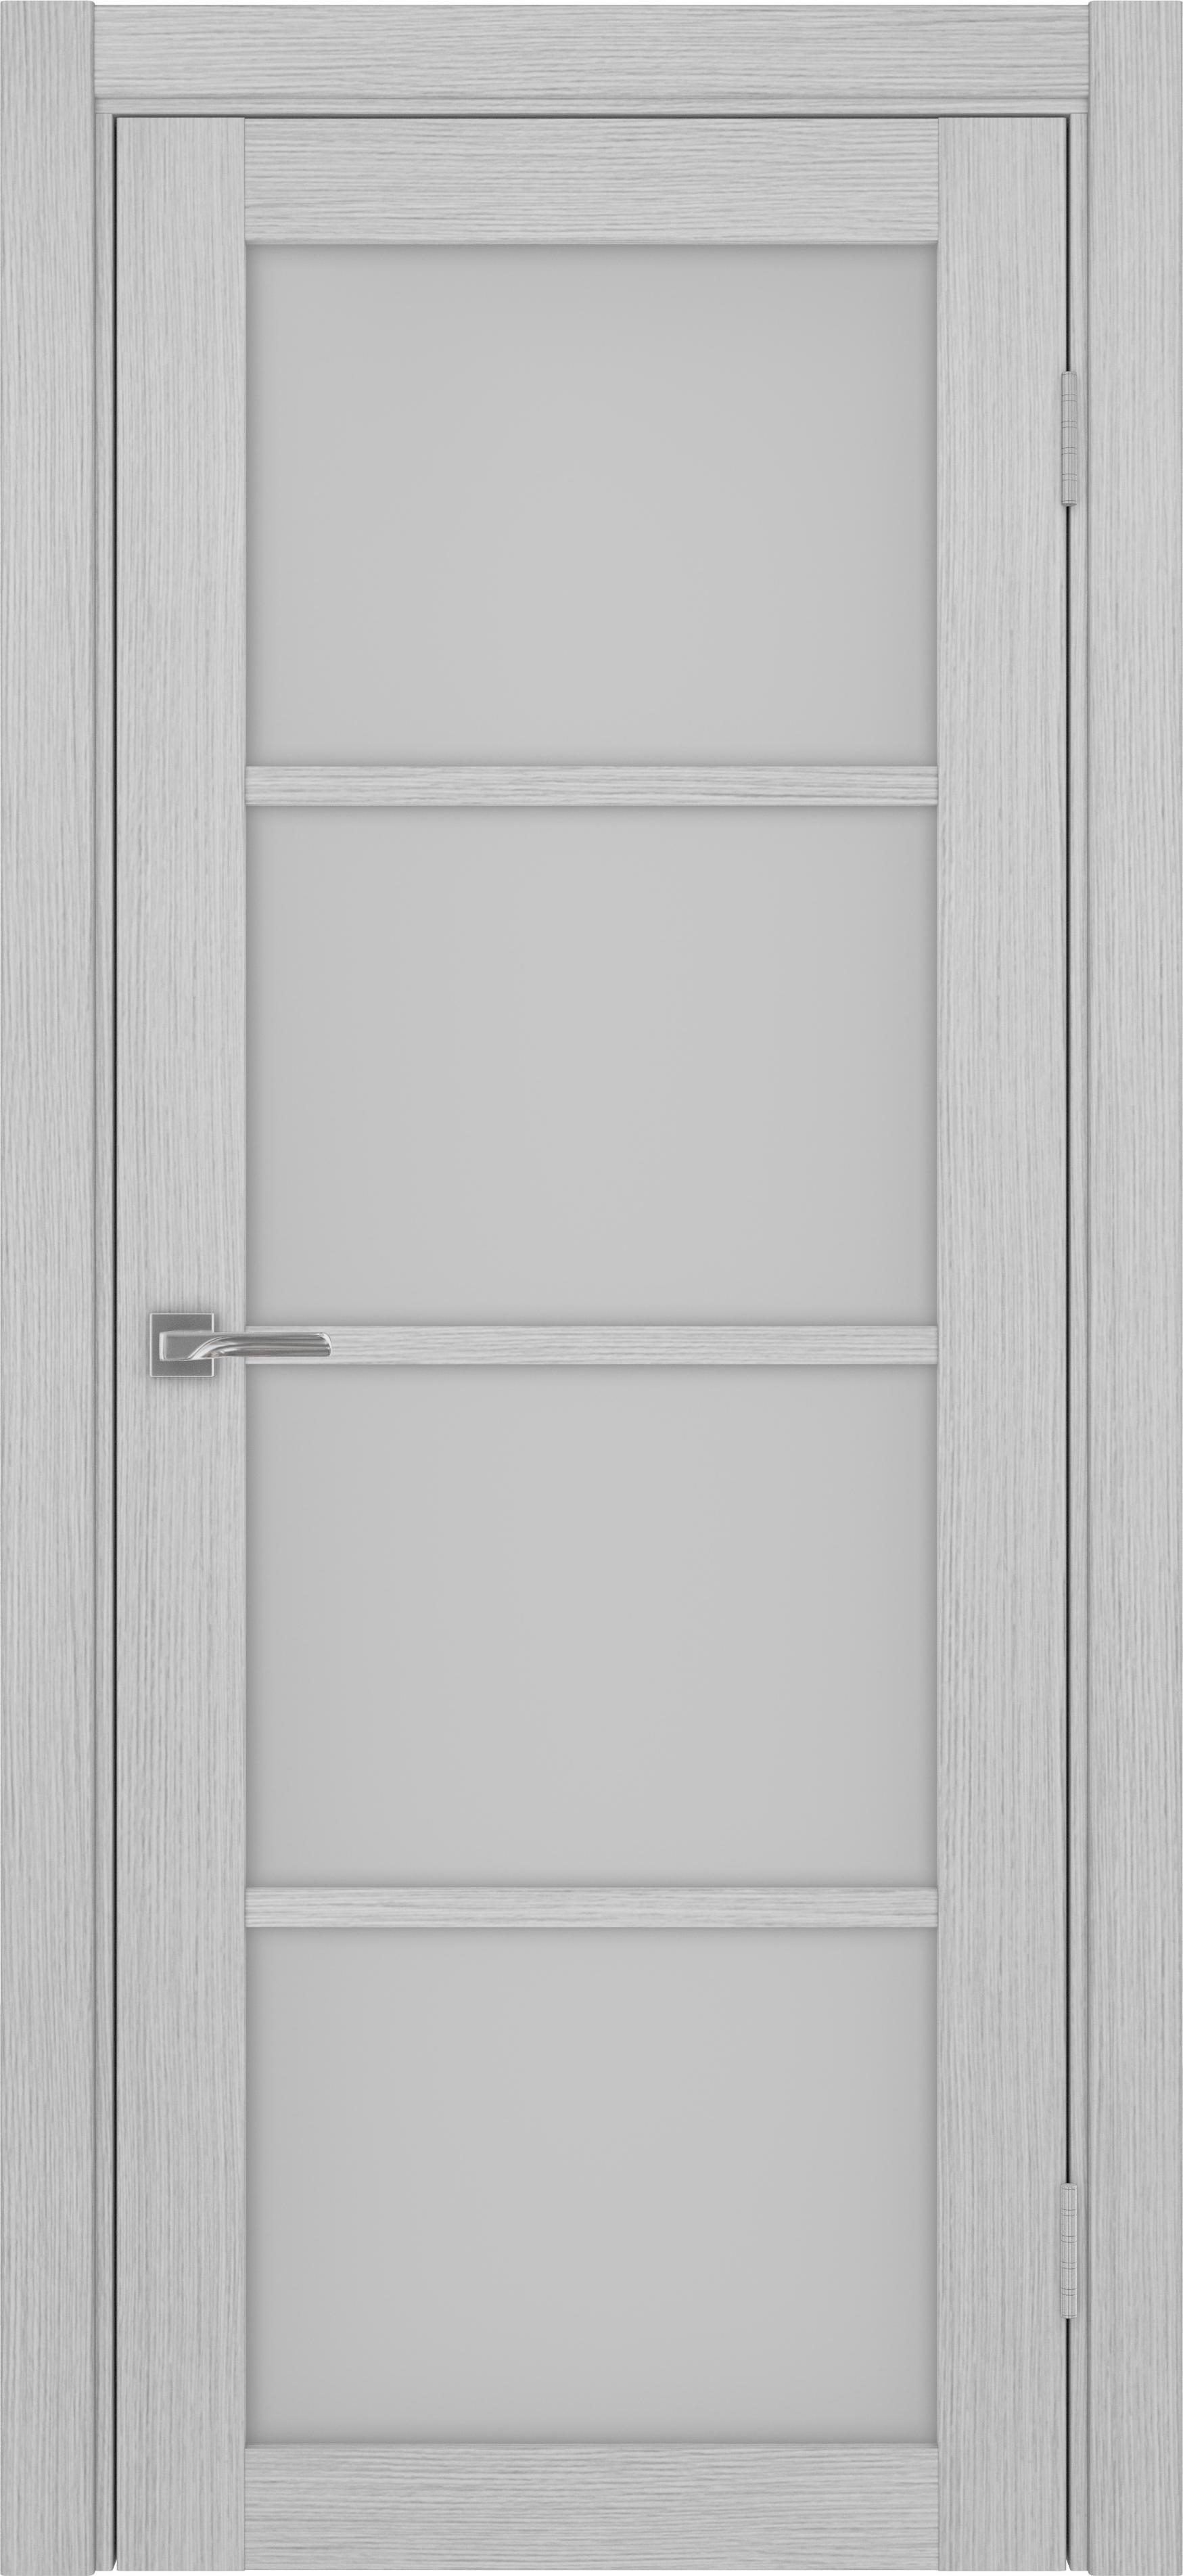 Межкомнатная дверь «Турин 540.2222 Дуб серый» стекло сатин